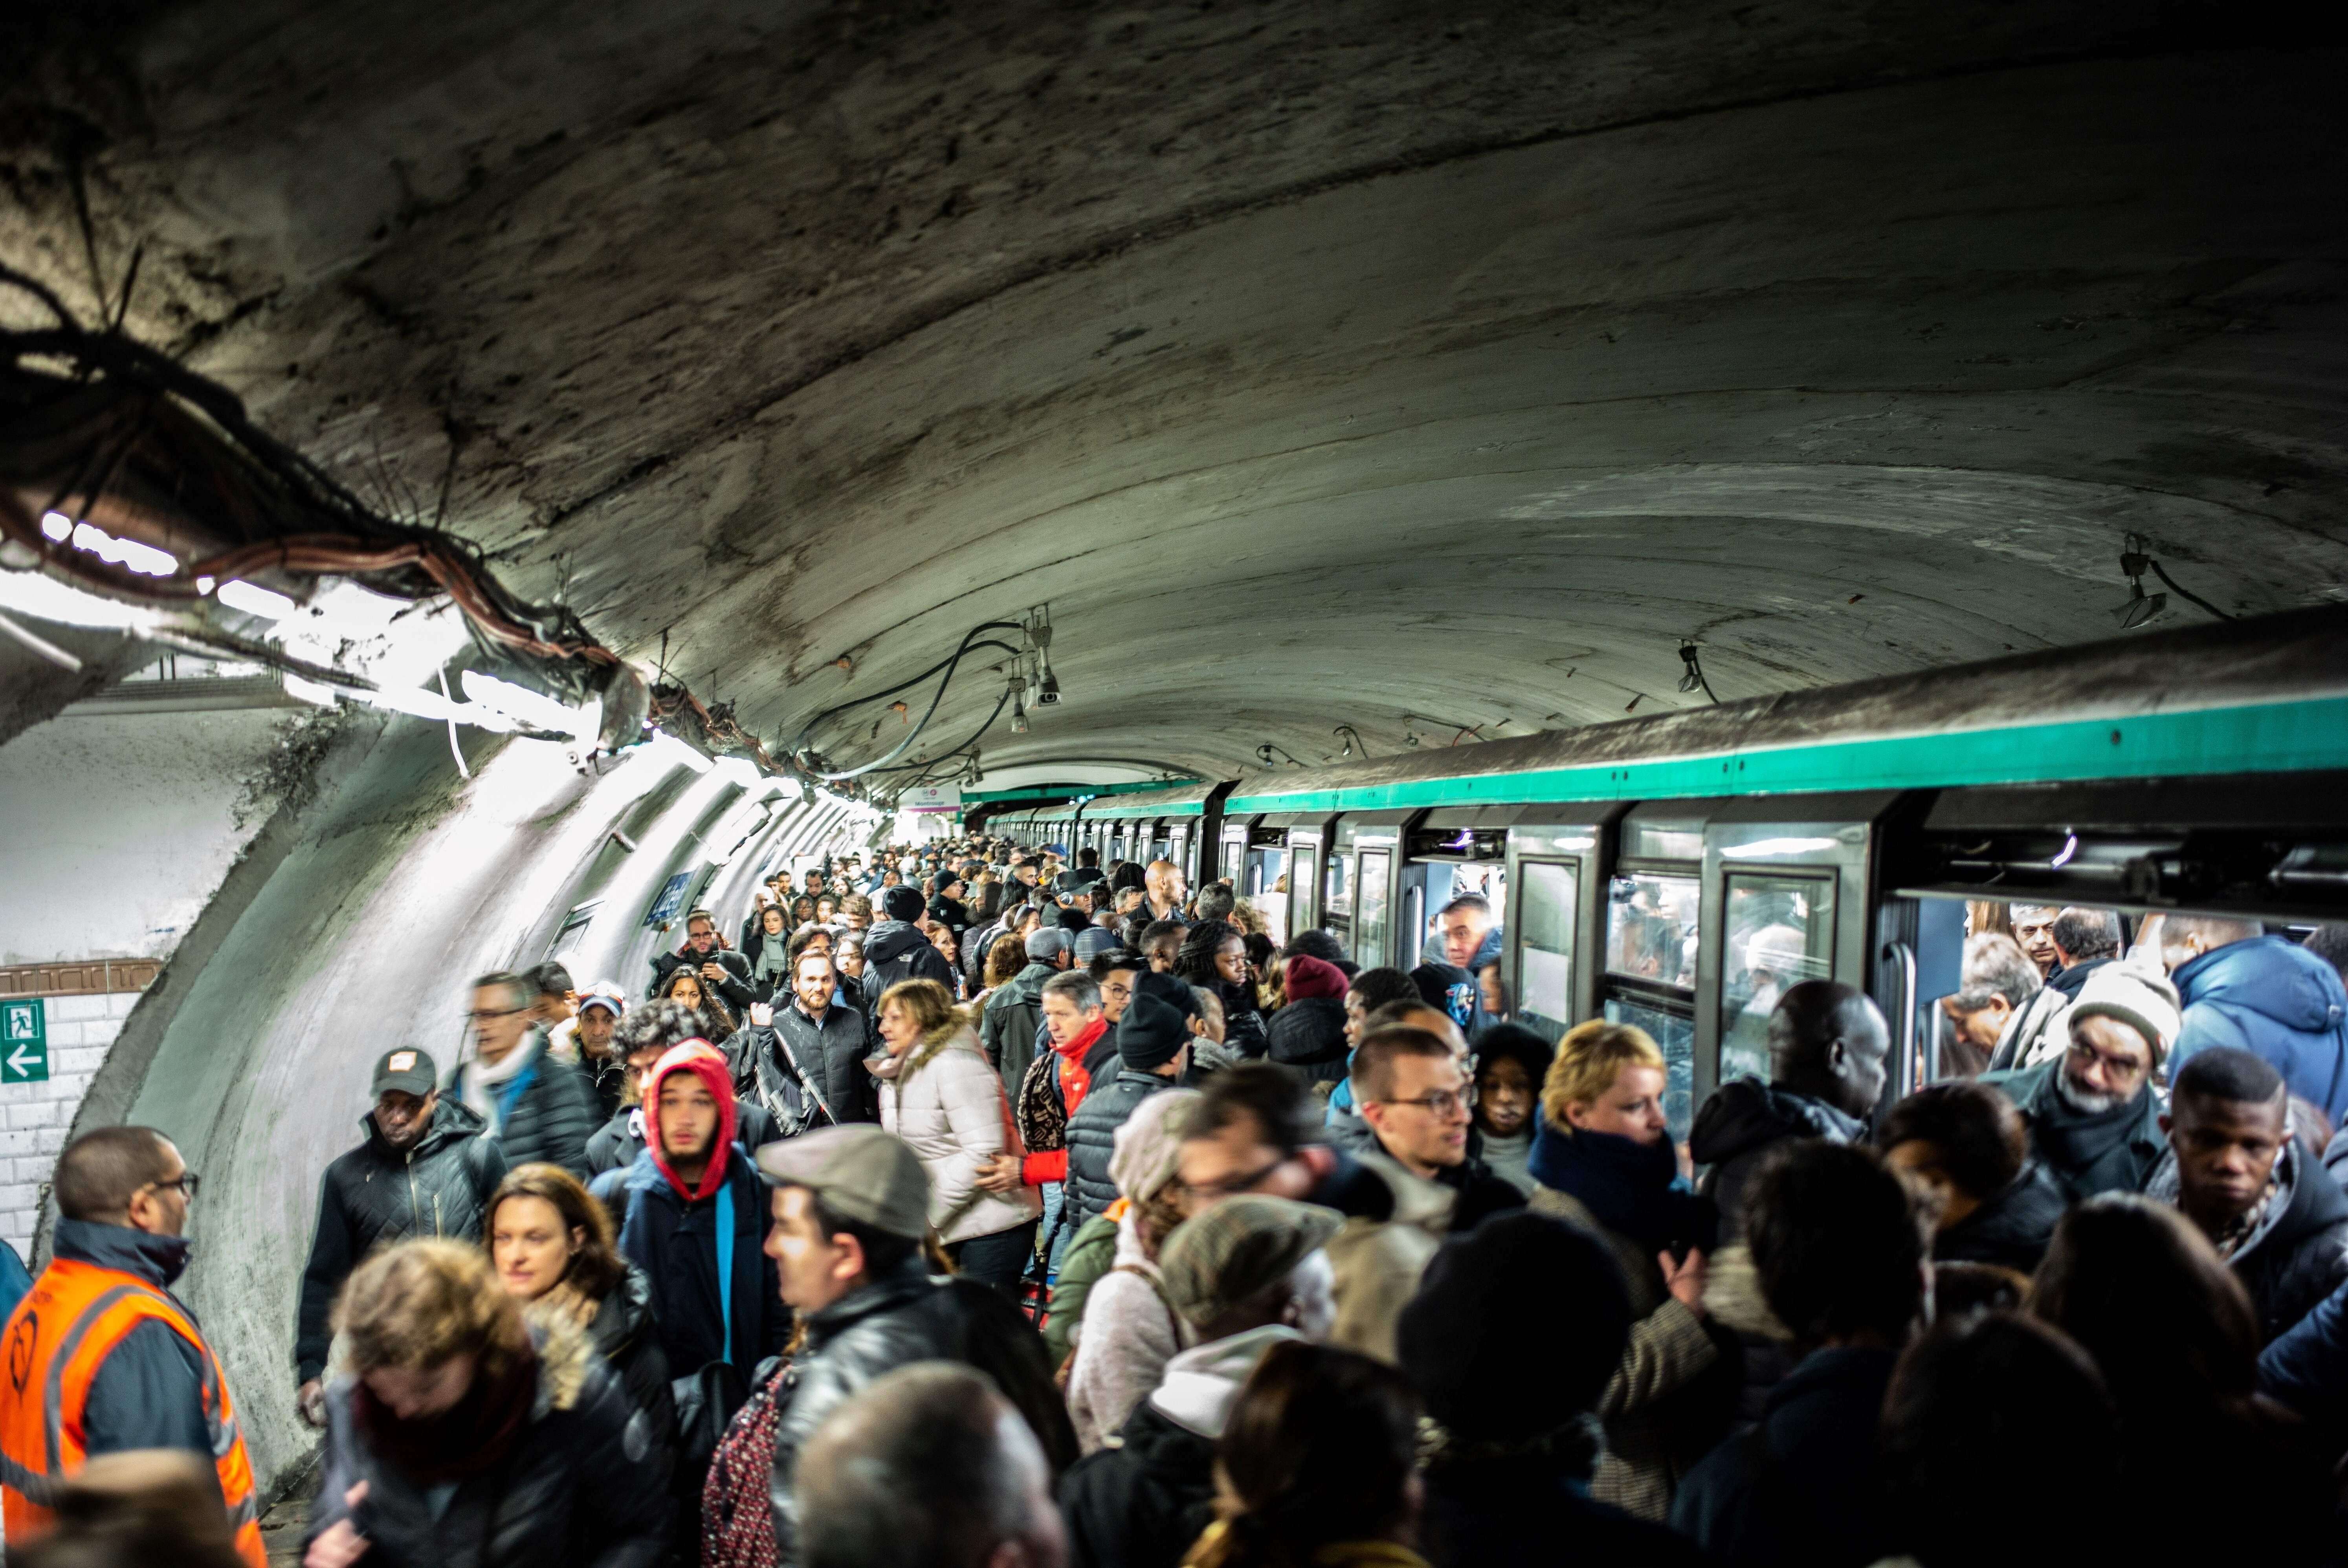 Ces scènes de cohue vue le 16 décembre dans le métro parisien pourraient se renouveler dimanche 22 puisque seules les lignes automatiques seront ouvertes.